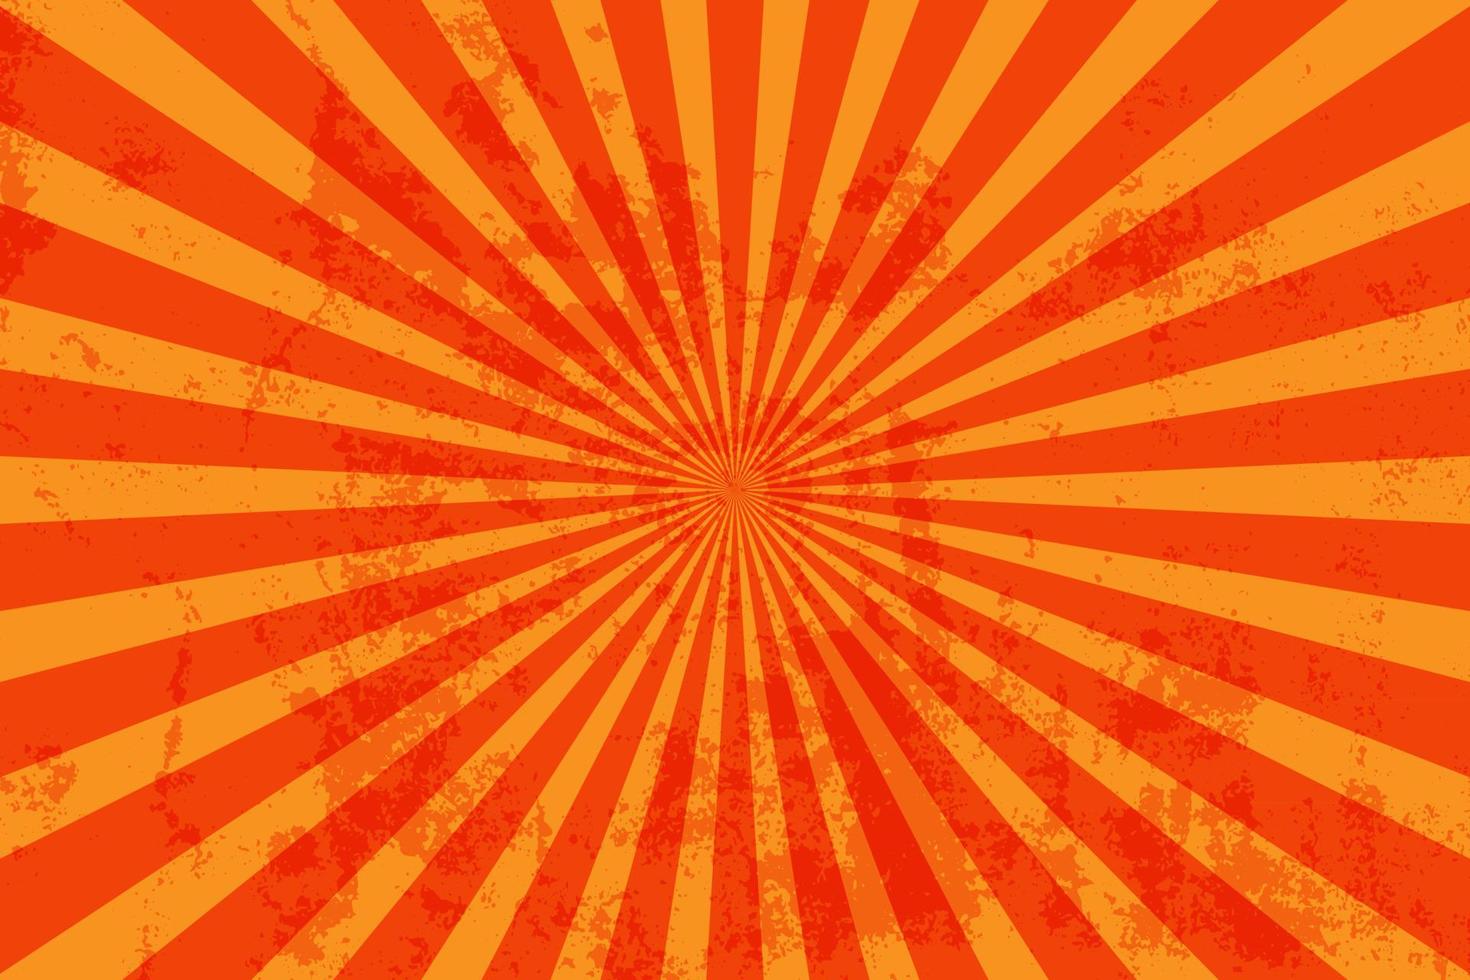 repig grunge orange sunburst bakgrund vektor illustration, årgång stil